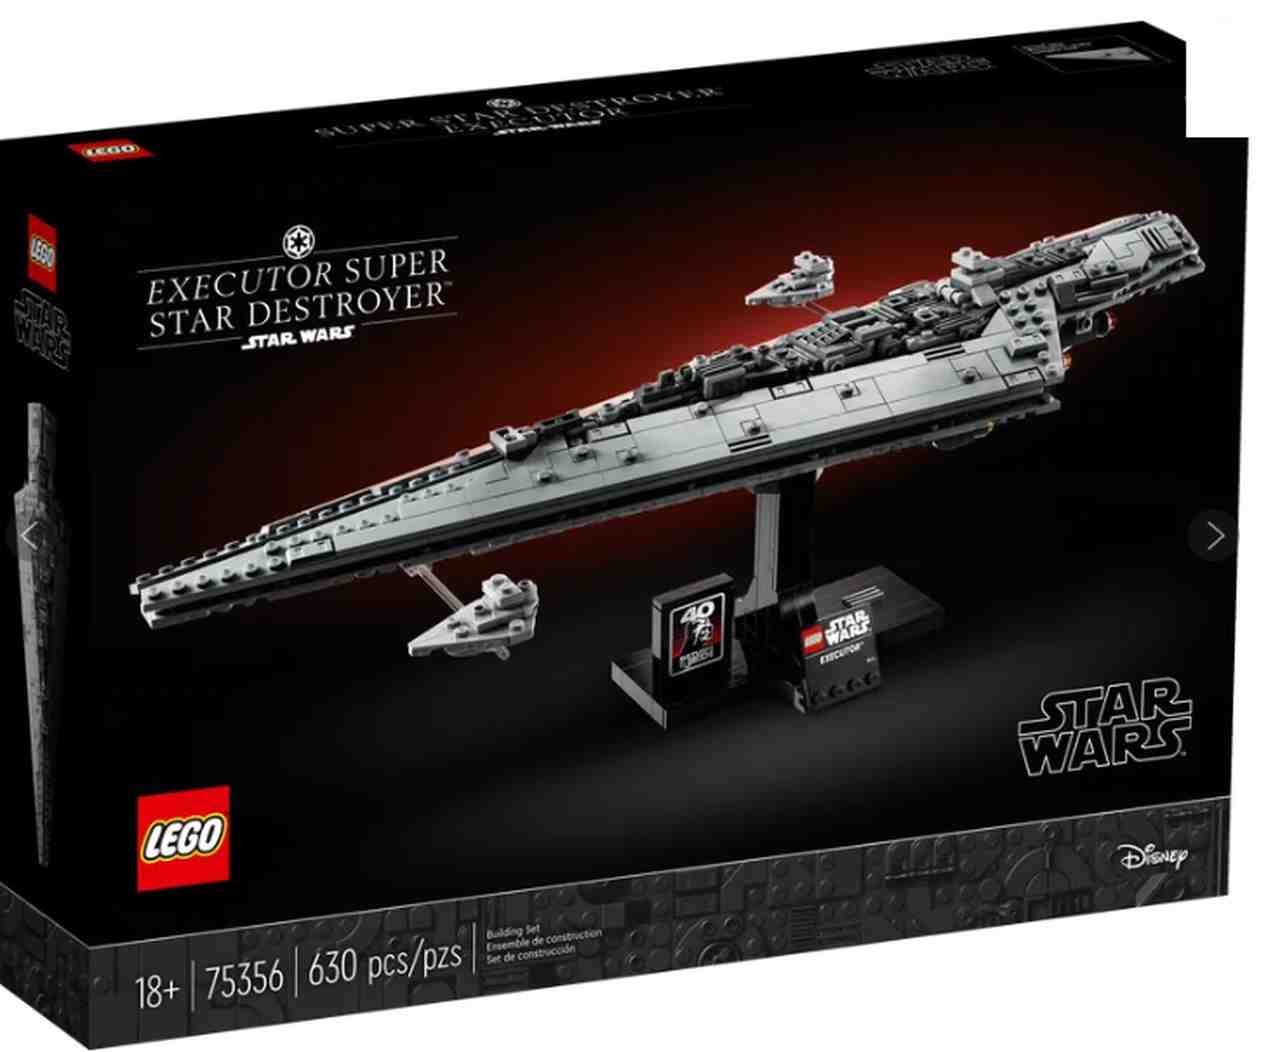 Ein heimliches neues Lego Star Wars Set